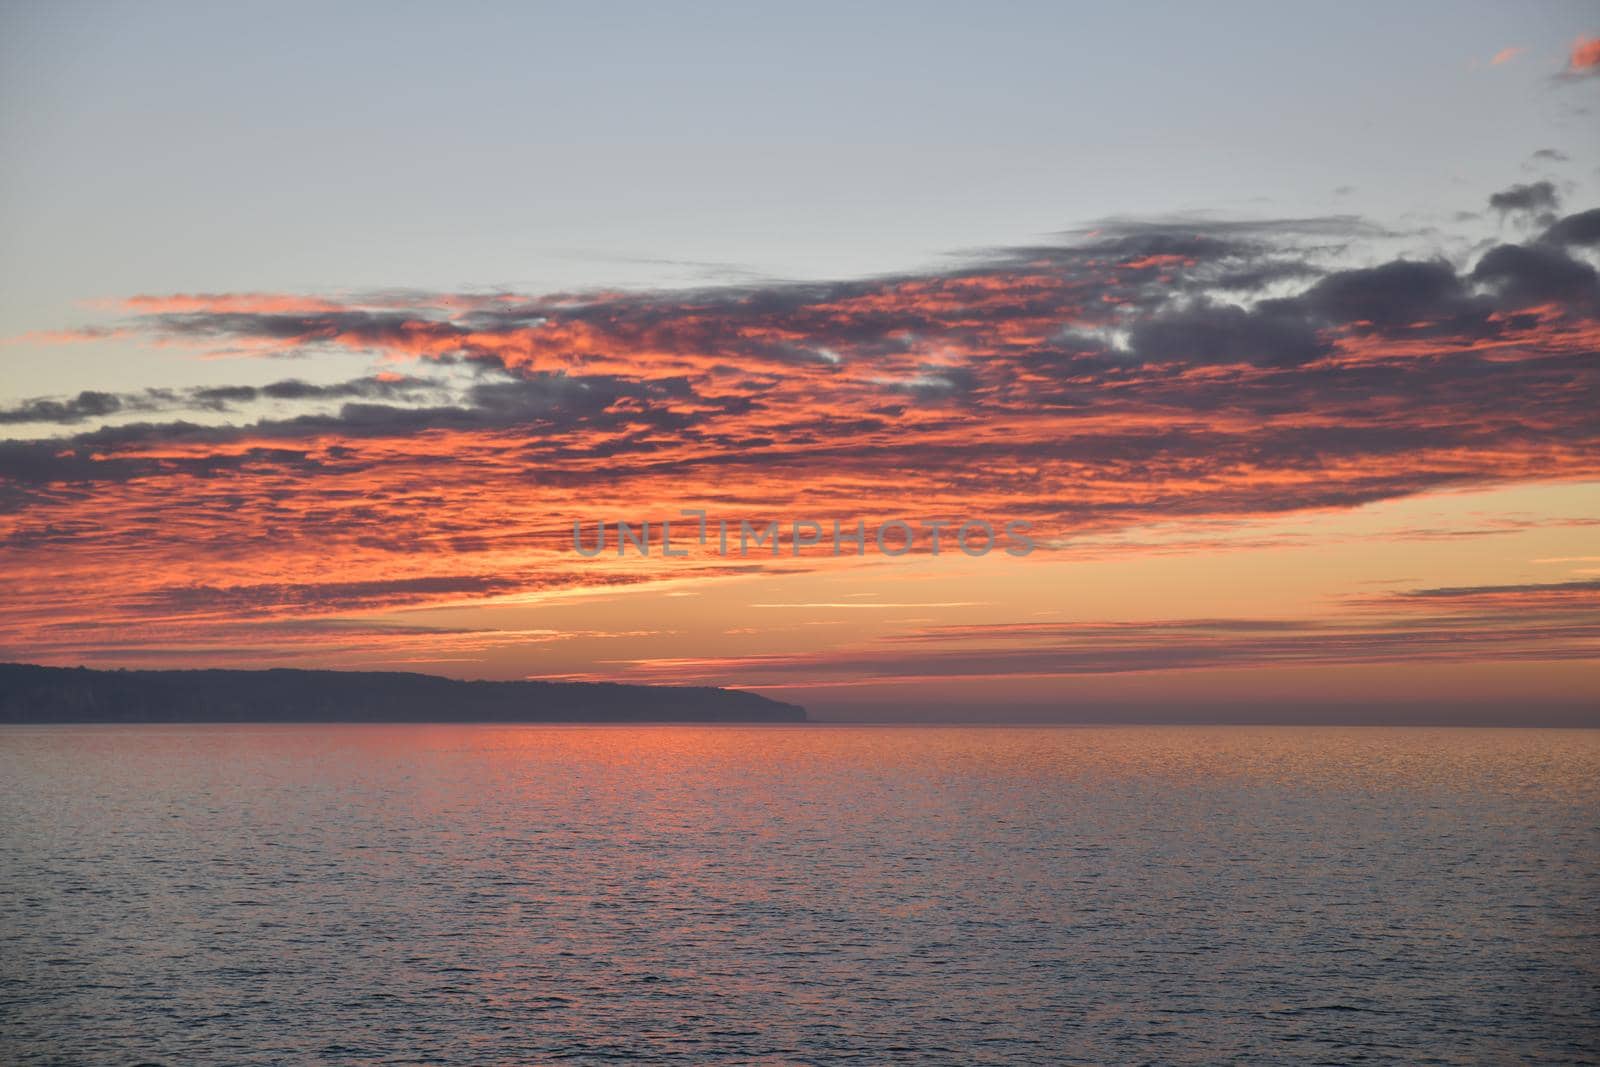 Golden sunset on the Atlantic ocean